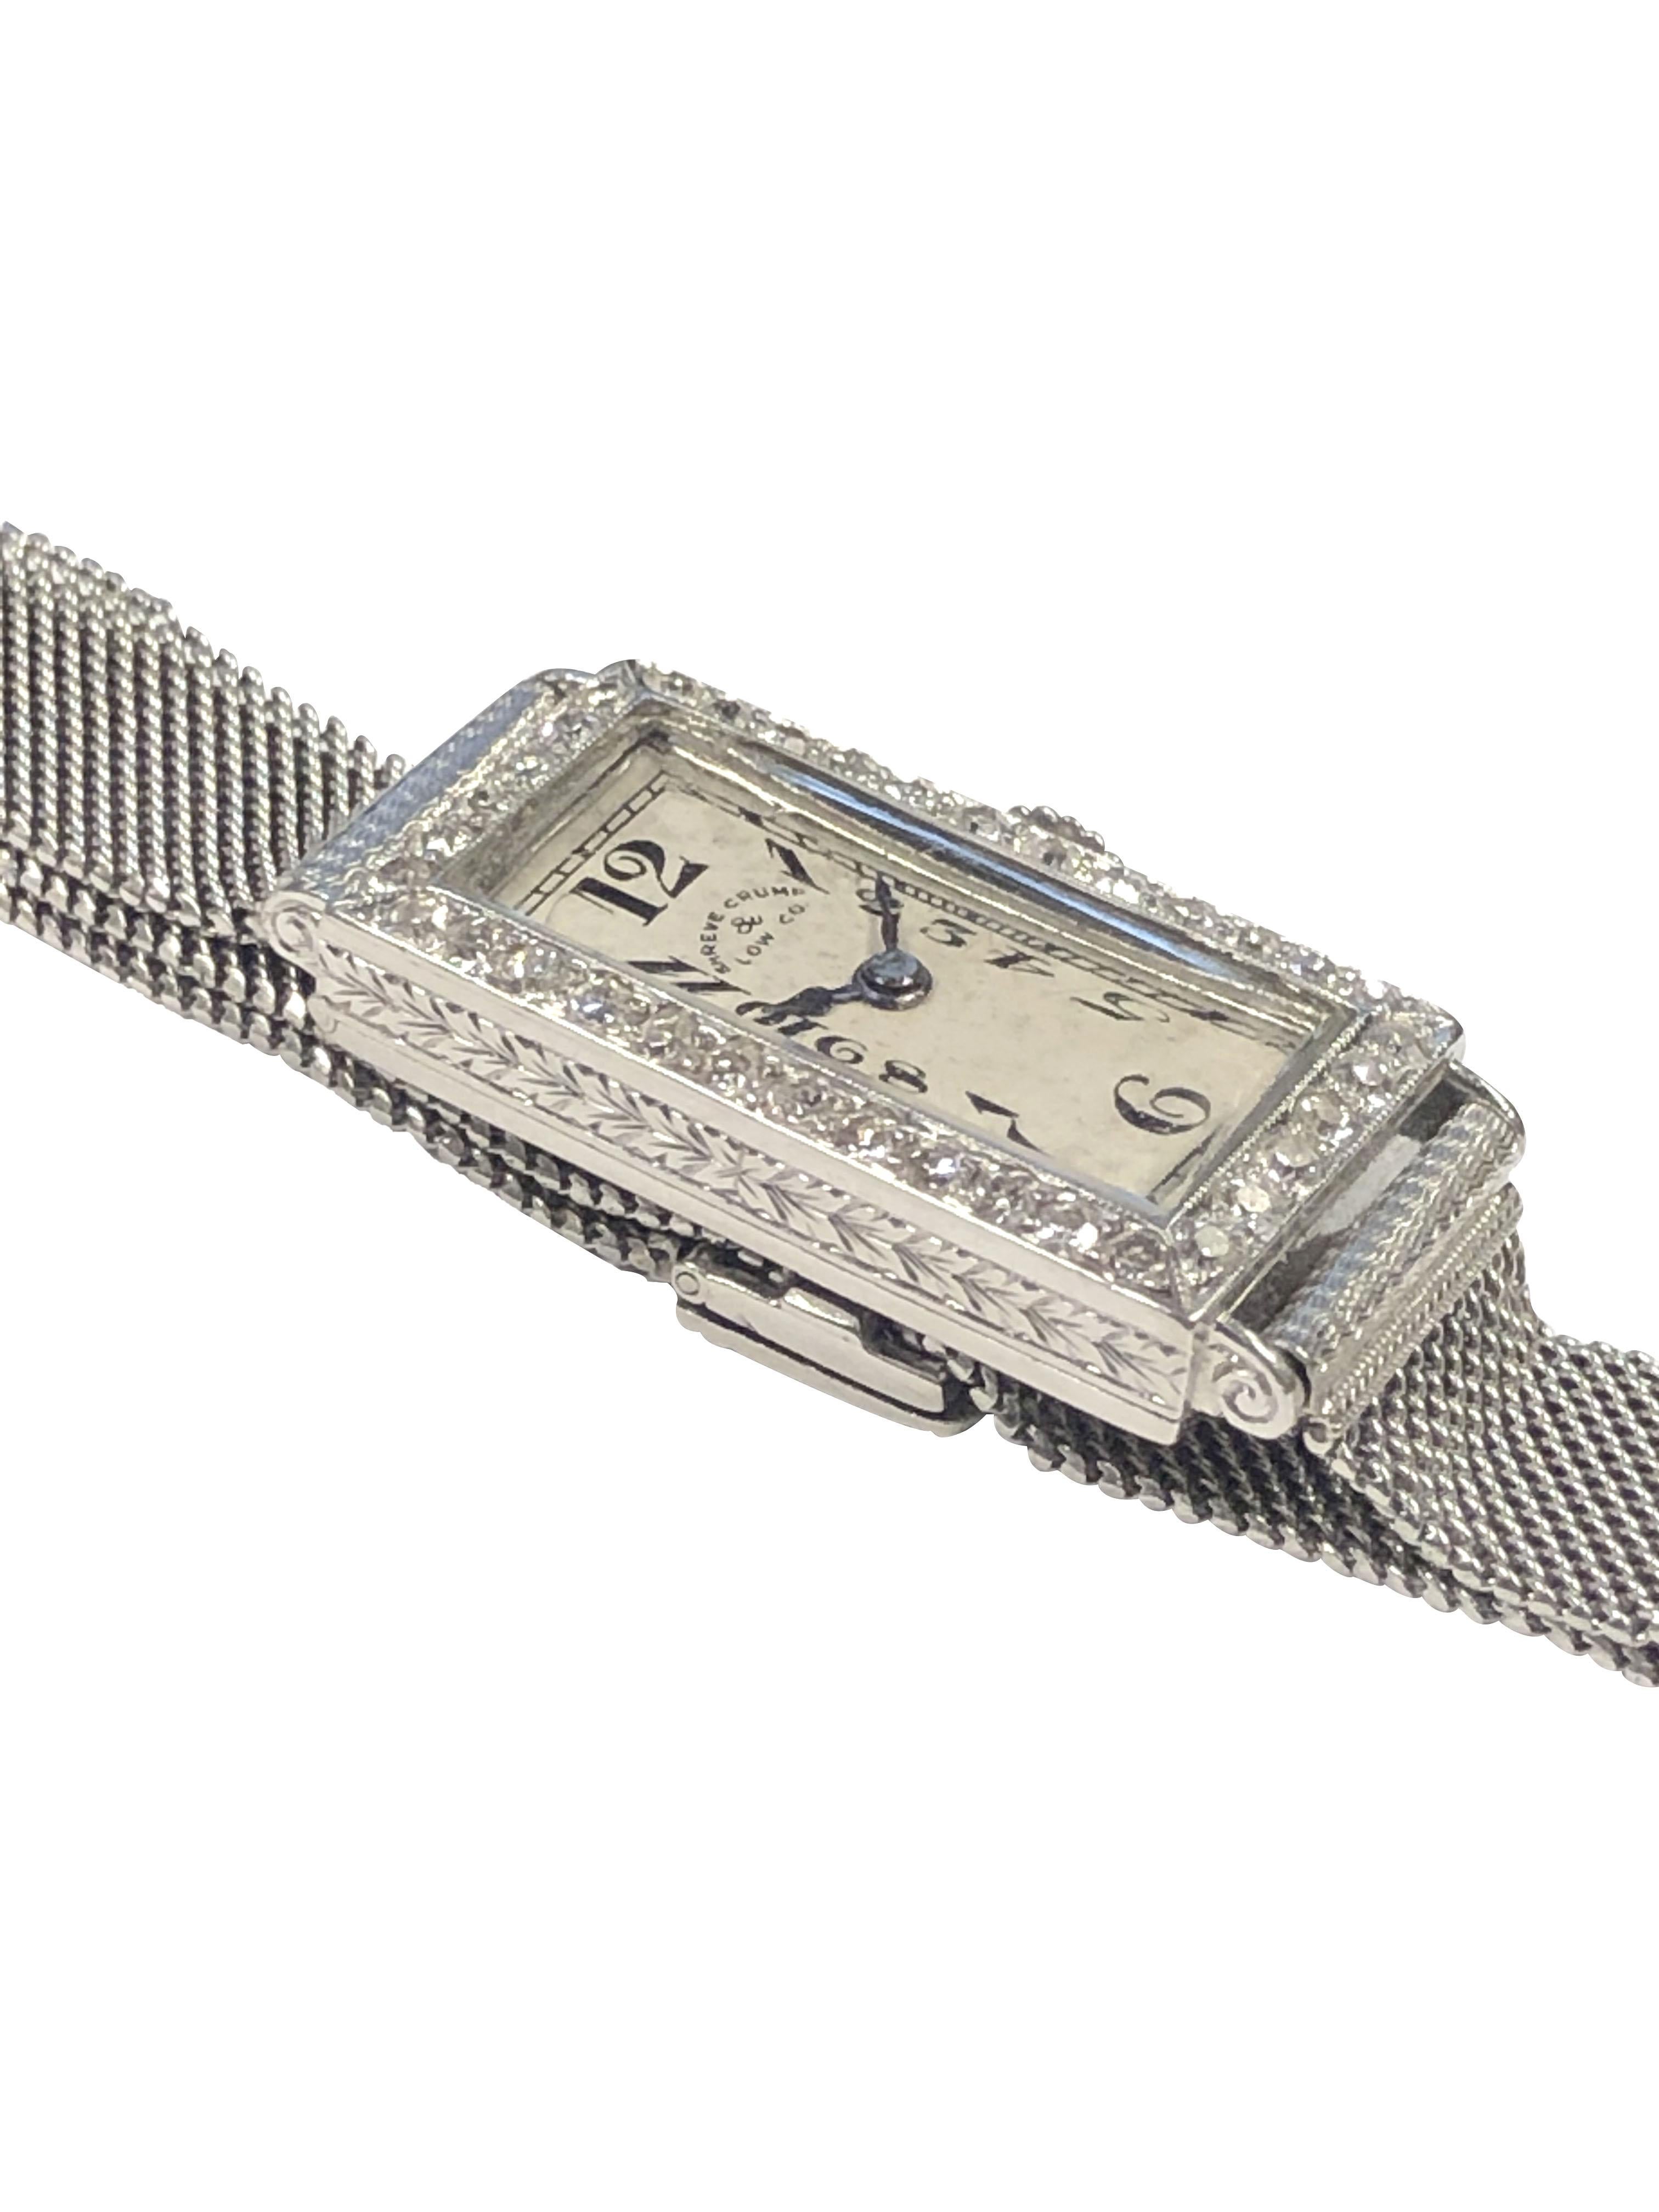 Montre-bracelet Patek Philippe pour dames, datant des années 1920, vendue au détail par Shreve Crump & Low, 24 X 13 M.M. Boîtier en platine serti de diamants de taille ancienne. Design/One gravé à la main sur les côtés et le fond du boîtier.